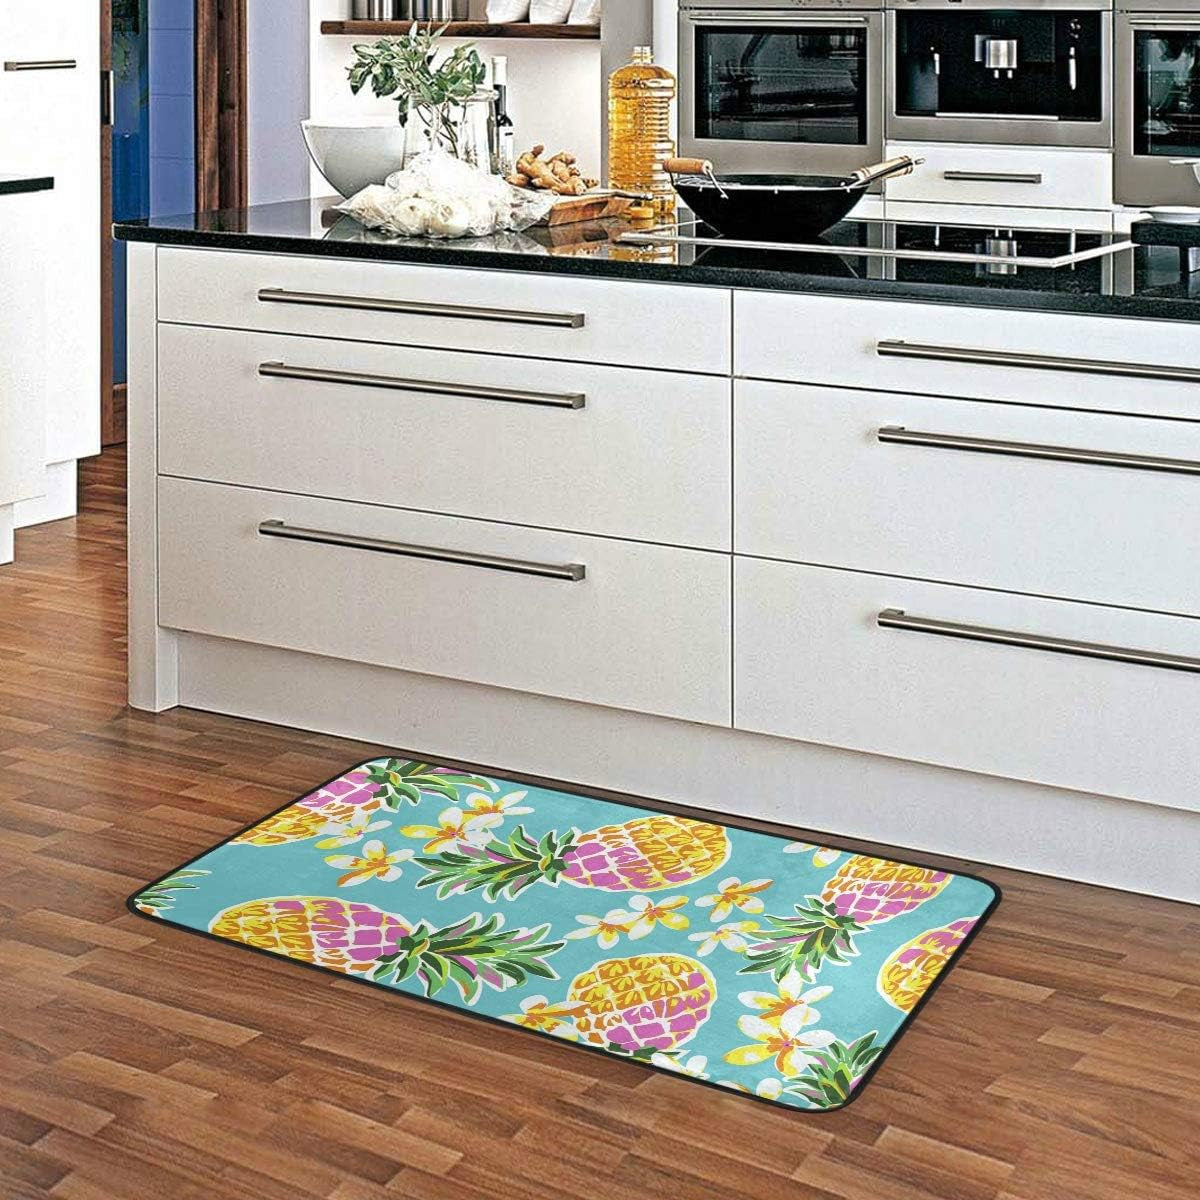 Doormat Area Rug Mat Colorful Pineapple for Bedroom Front Door Kitchen Indoors Home Decors